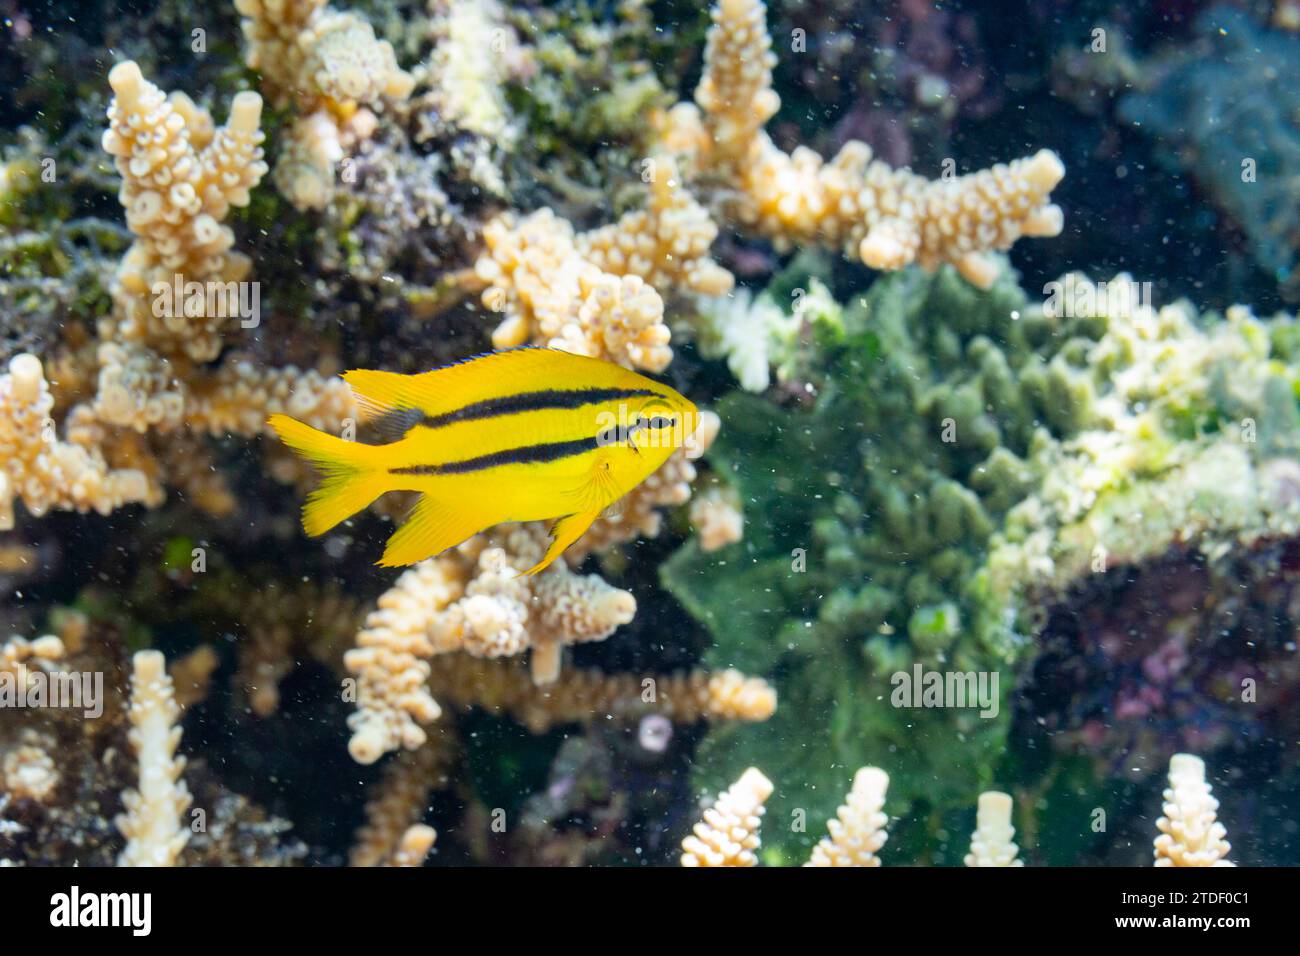 Una giovane damigella indo-pacifica dalla coda gialla (Neoglyphidodon nigroris), sulla barriera corallina al largo dell'isola di Bangka, Indonesia, Sud-est asiatico Foto Stock